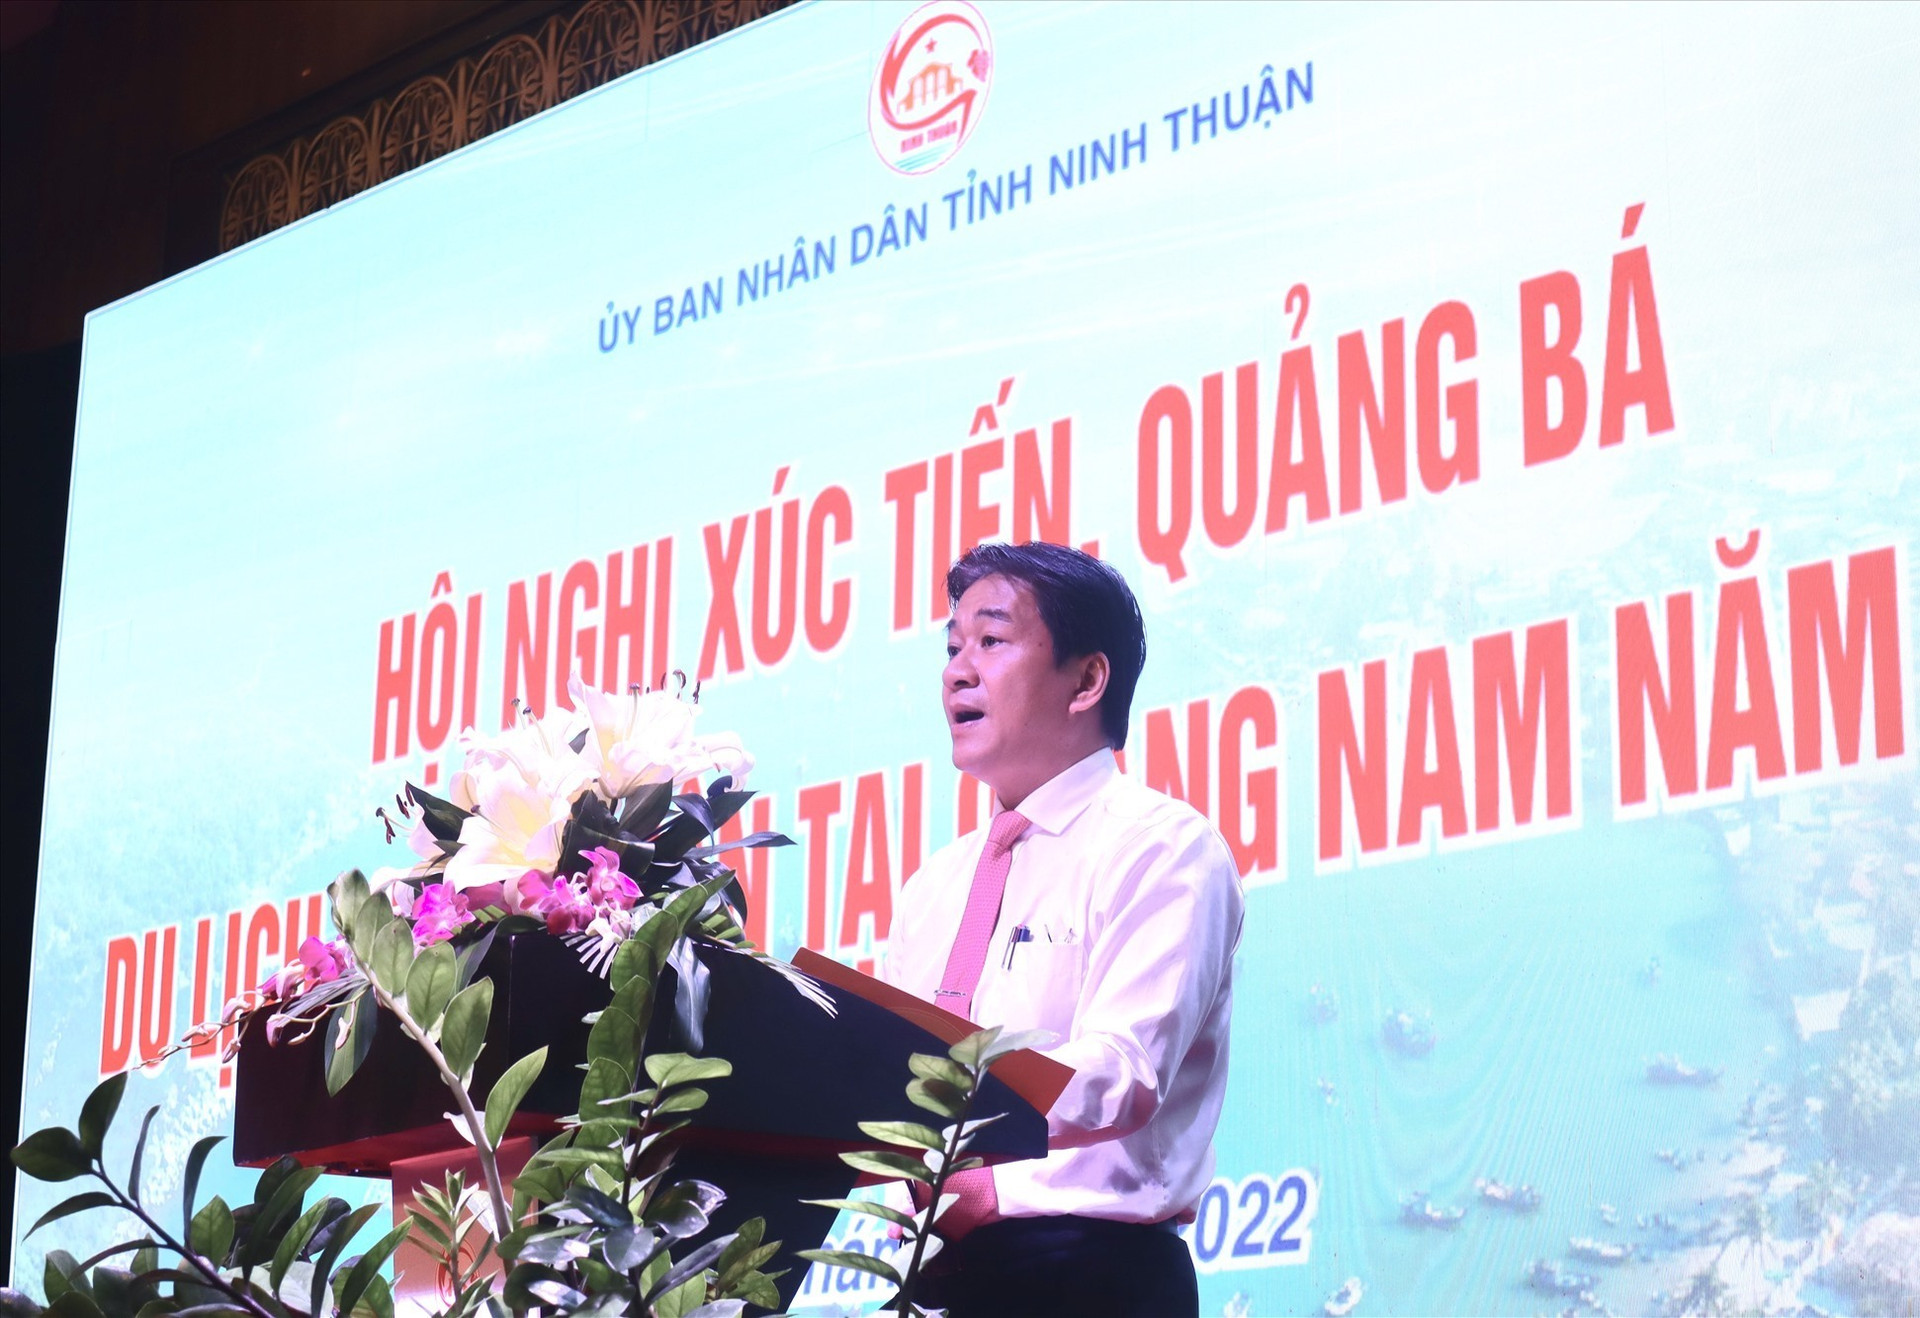 Phó Chủ tịch UBND tỉnh Ninh Thuận Nguyễn Long Biên thông tin về tiềm năng du lịch Ninh Thuận đến hội nghị. Ảnh: Q.T